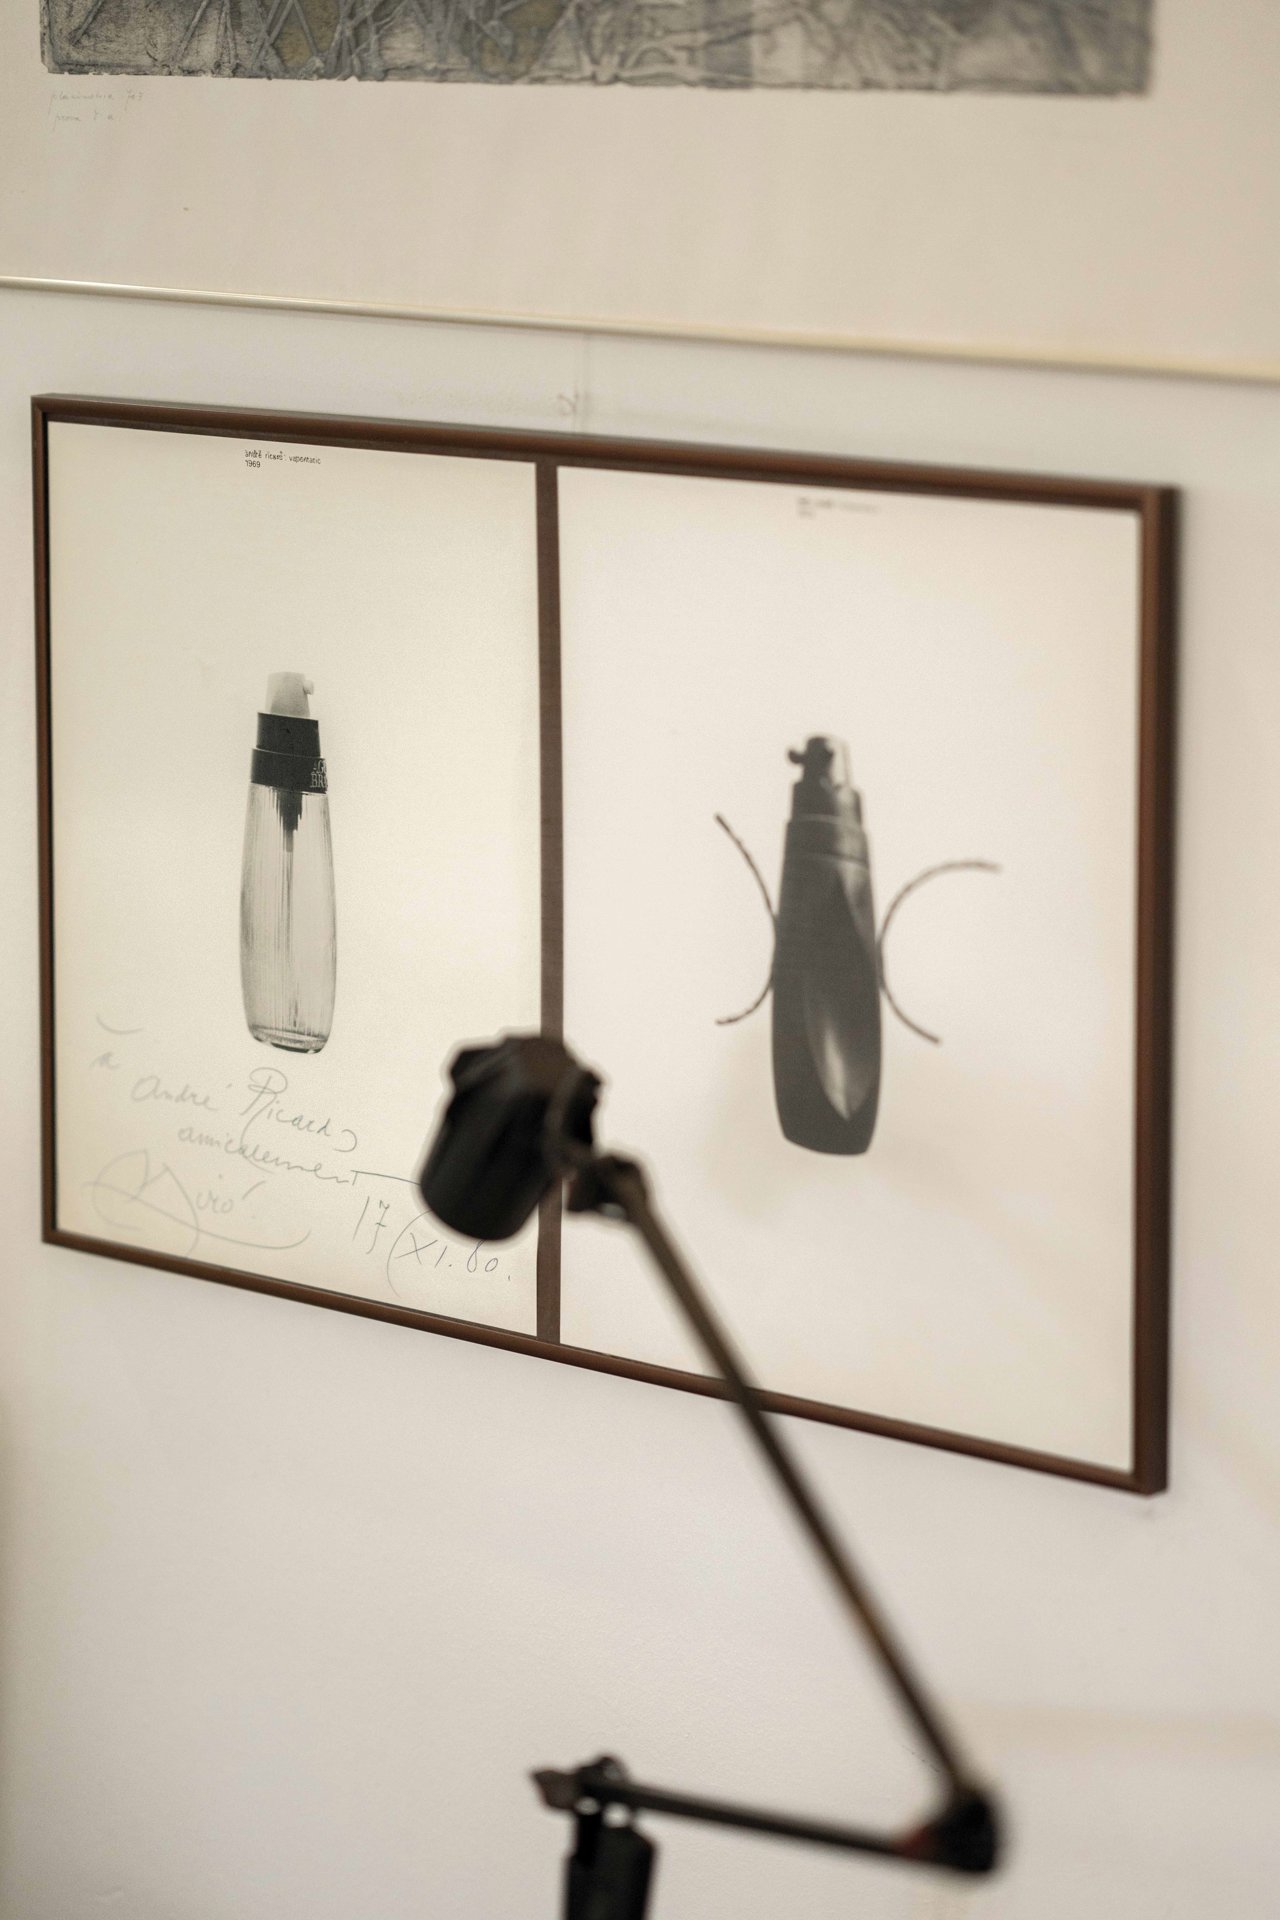 Montaje fotográfico con el envase Vapomatic de esta colonia y la escultura Femme de Joan Miró. 